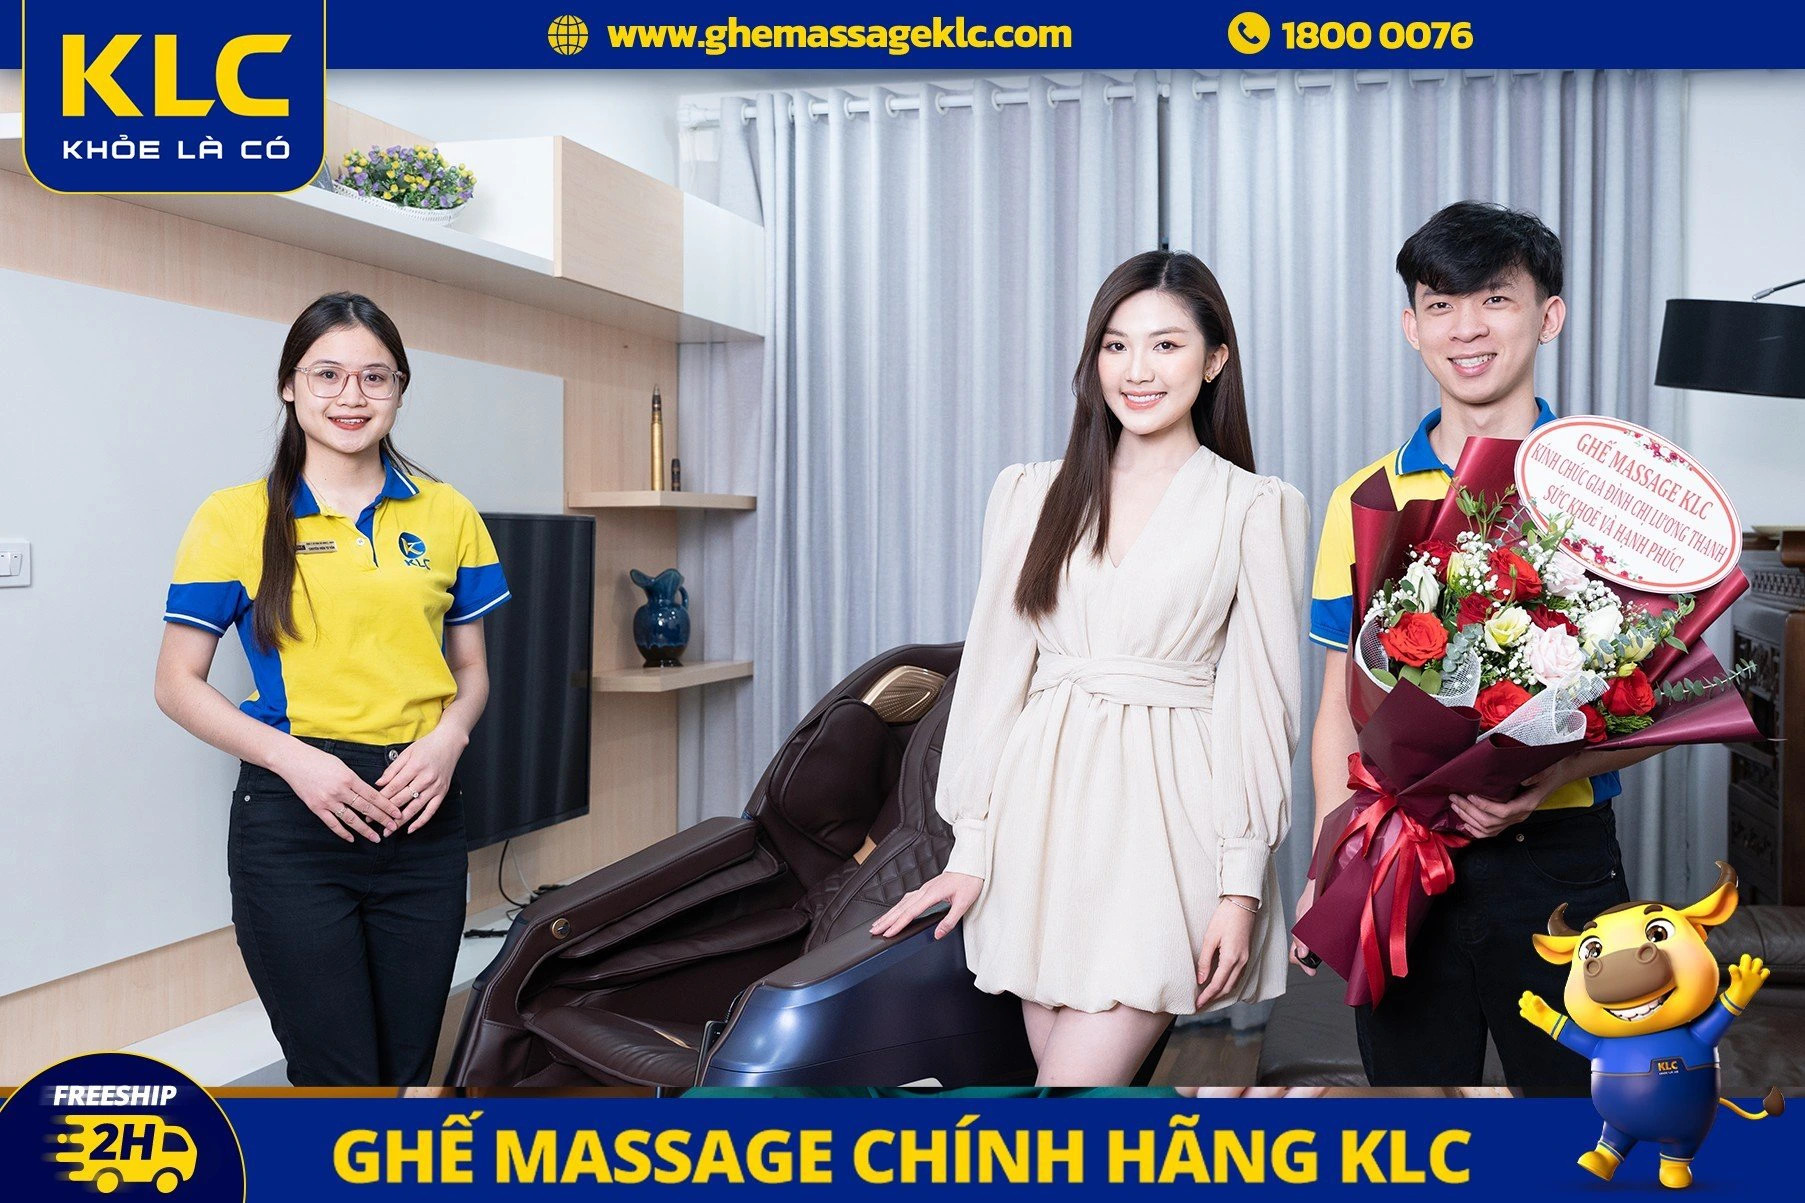 diễn viên Lương Thanh lựa chọn ghế massage KLC